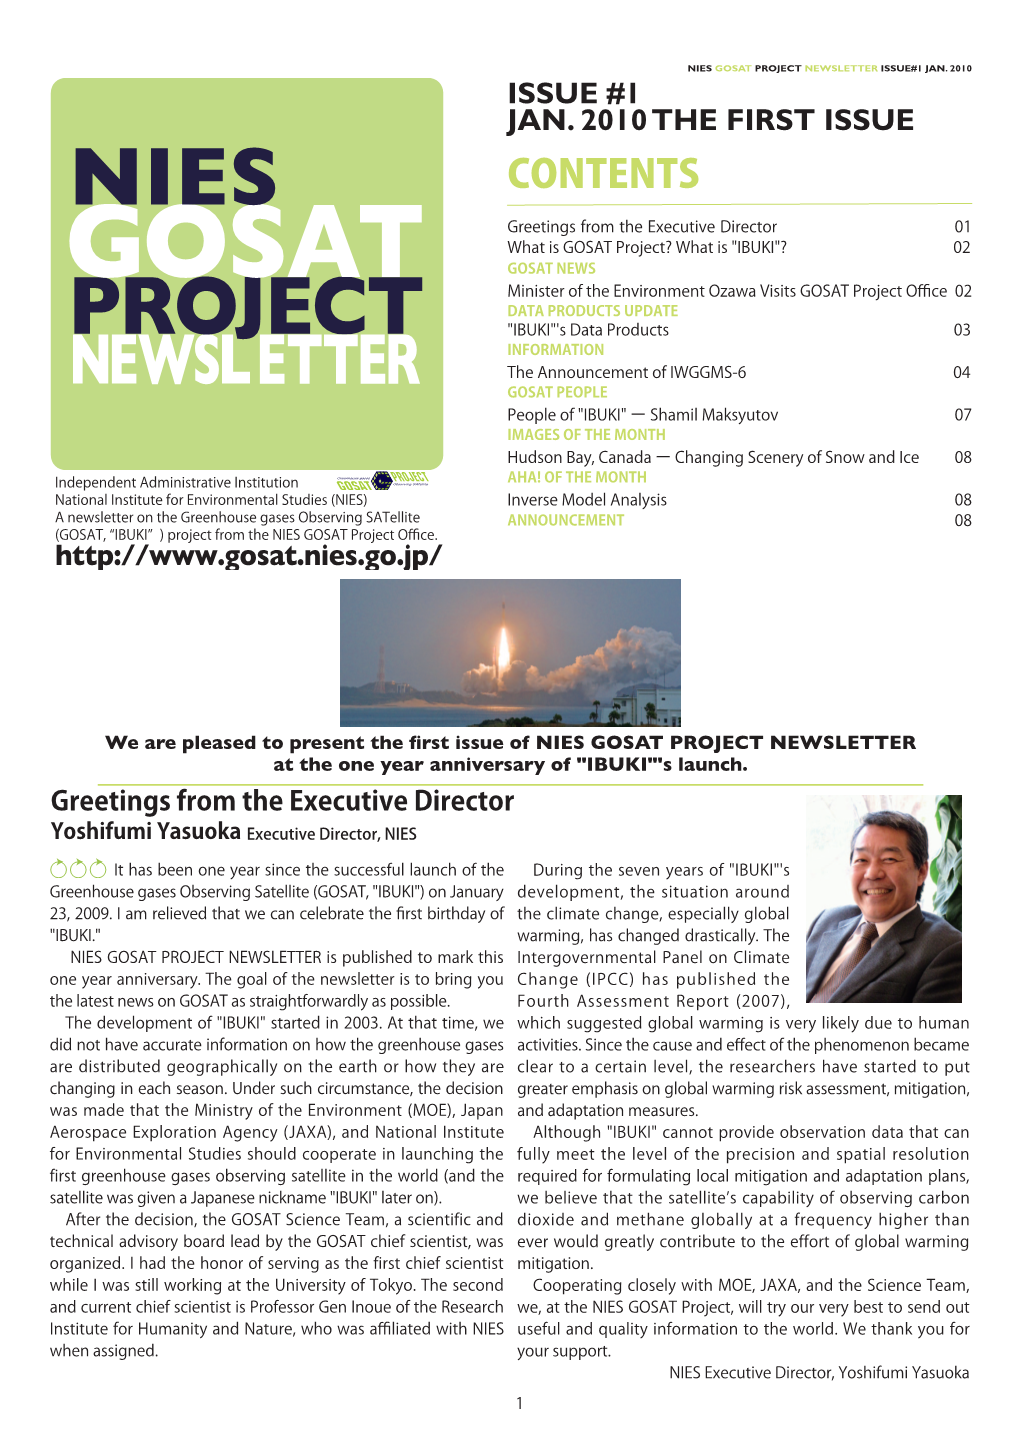 Gosat Project Newsletter Issue#1 Jan